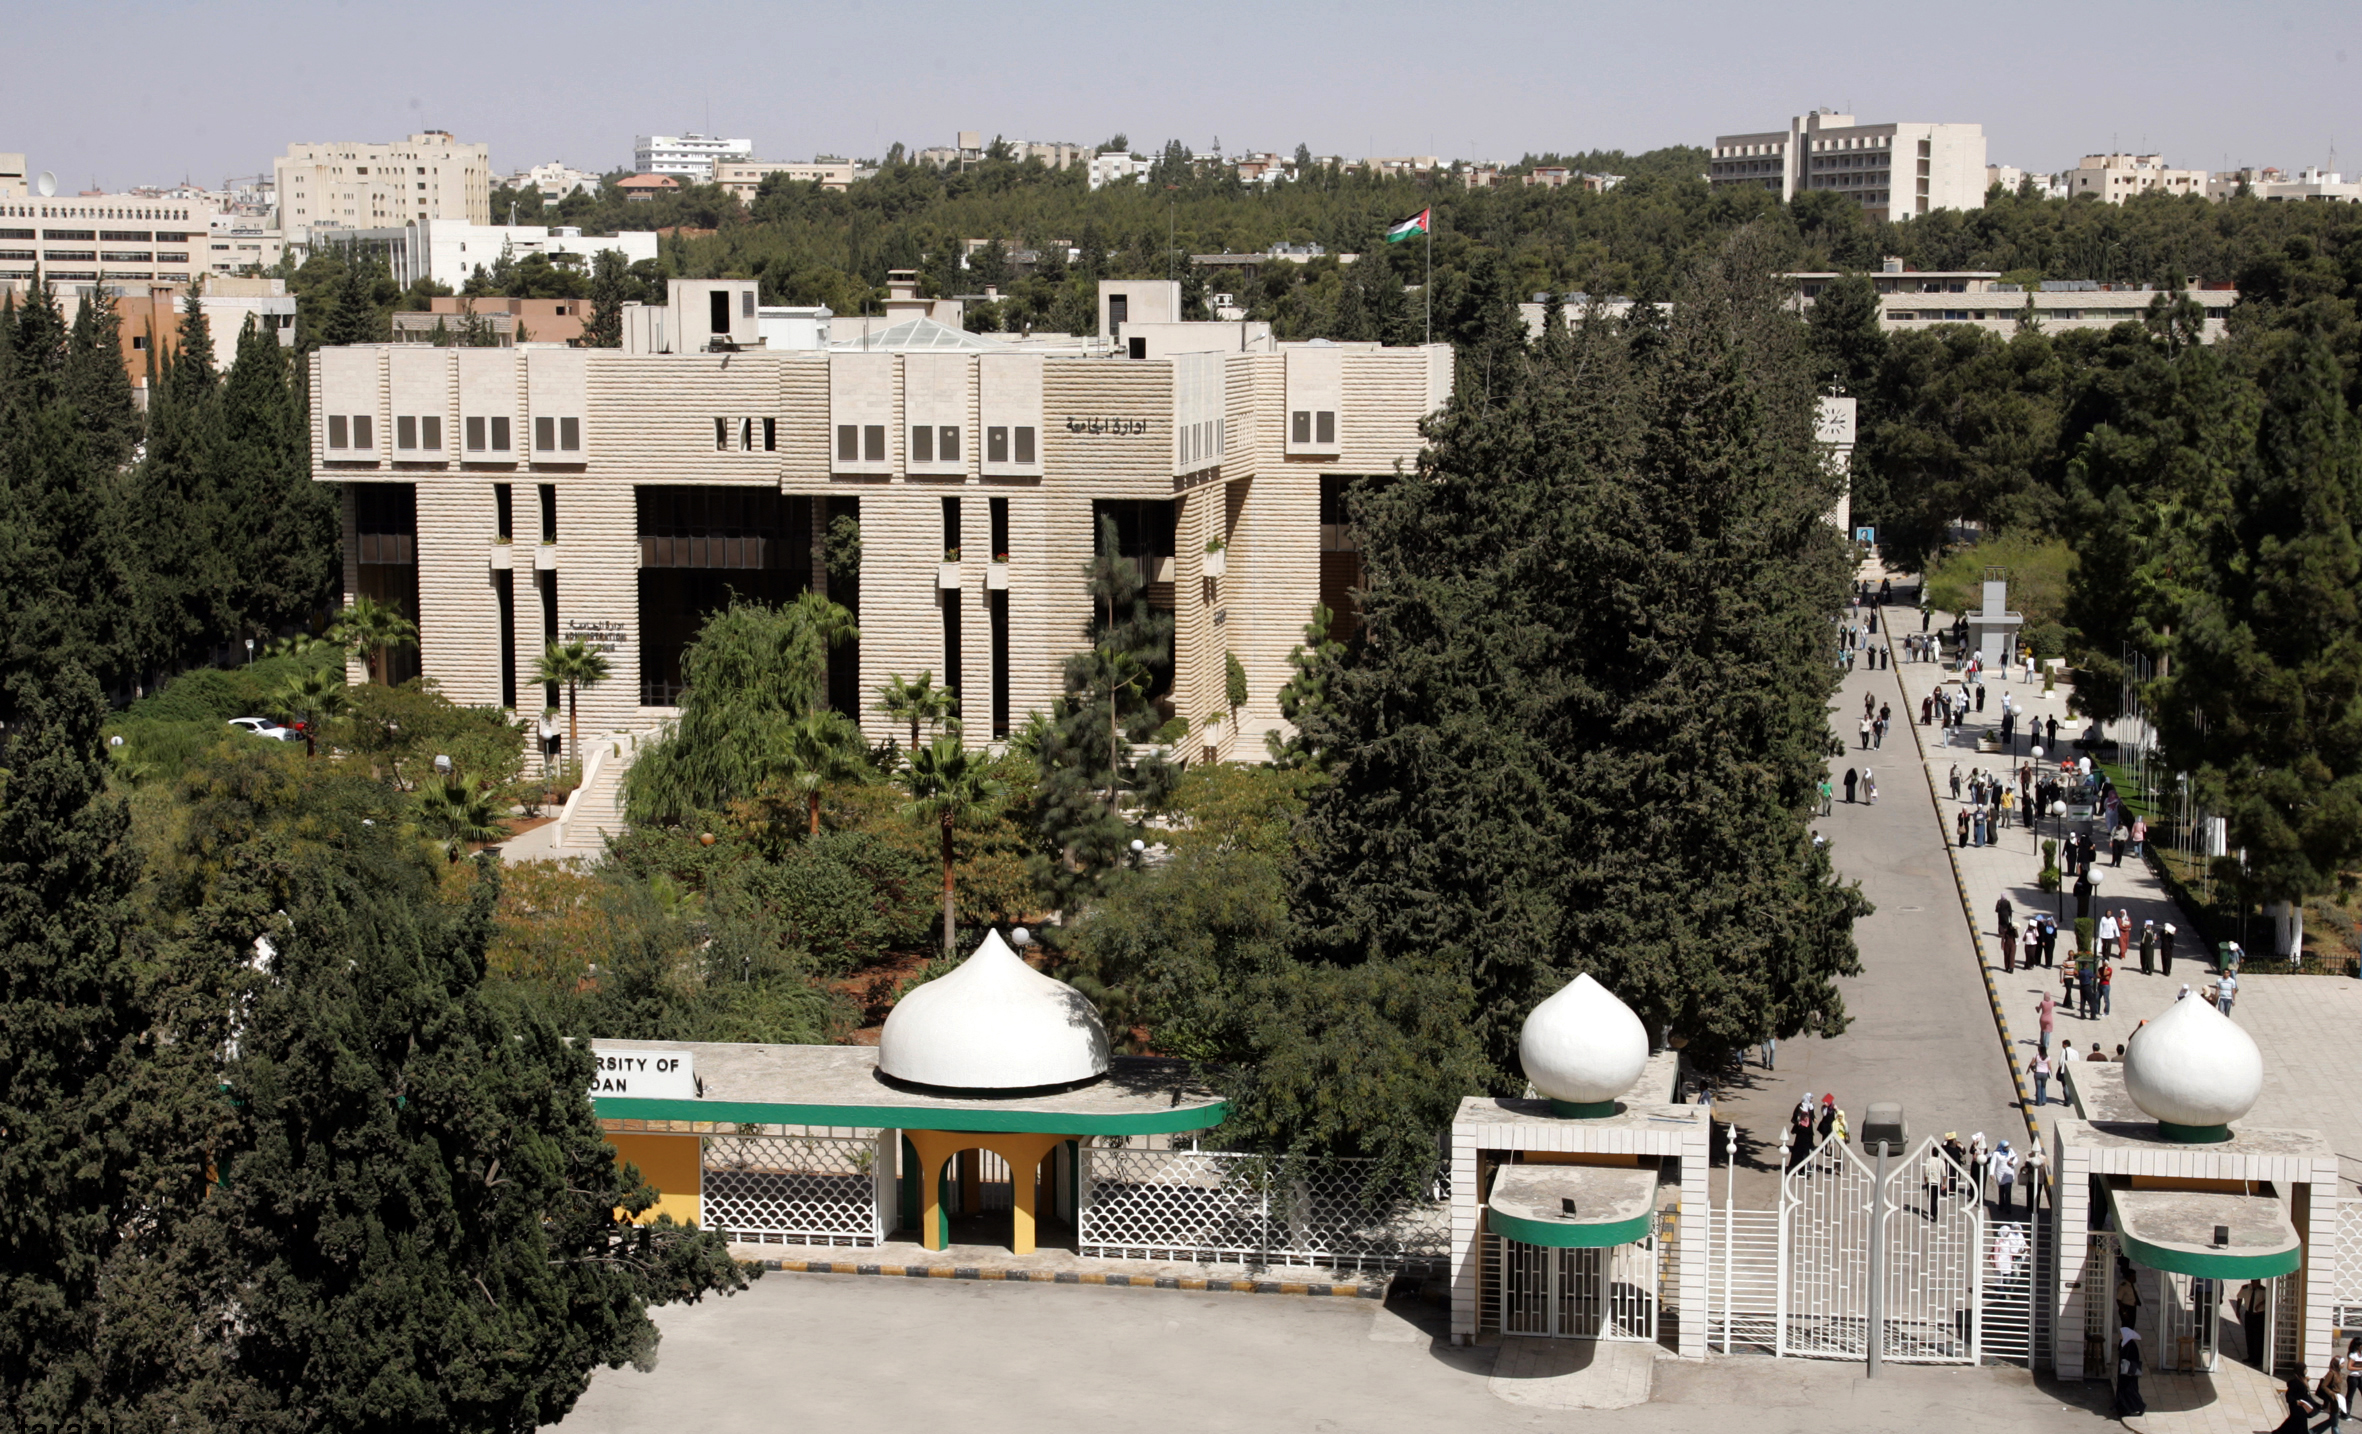 رسوم الدراسات العليا الجامعة الأردنية